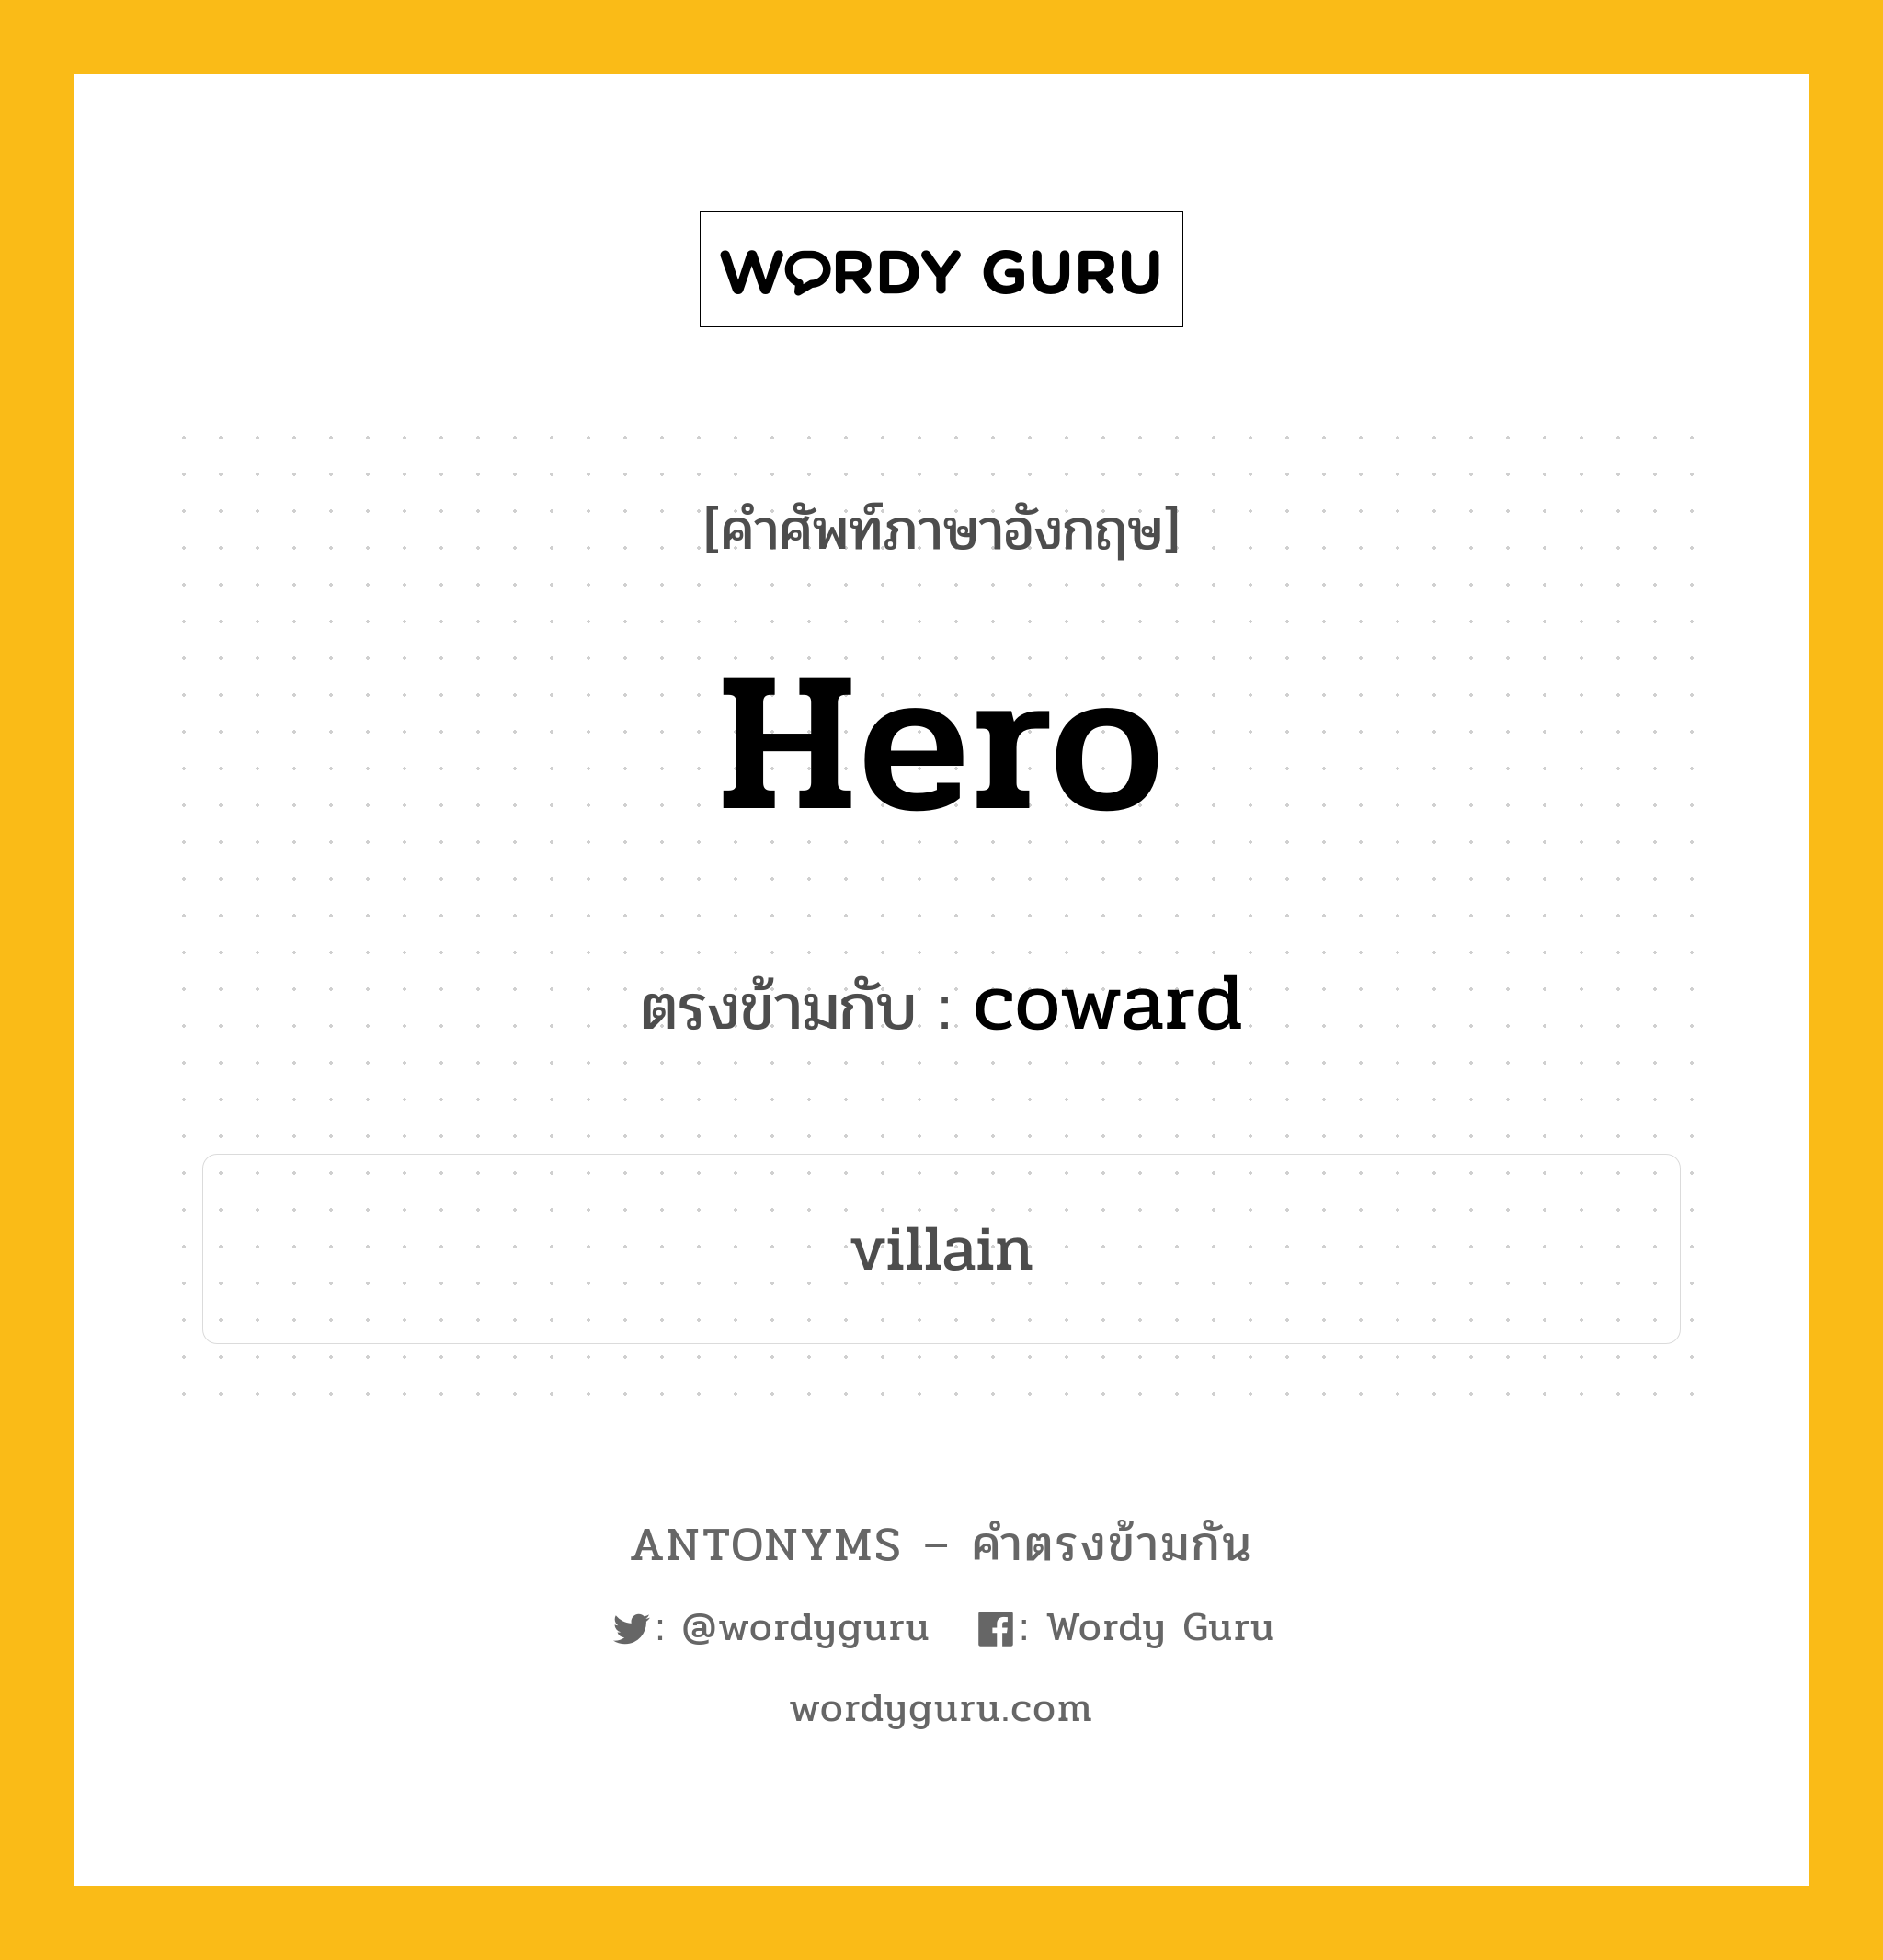 hero เป็นคำตรงข้ามกับคำไหนบ้าง?, คำศัพท์ภาษาอังกฤษ hero ตรงข้ามกับ coward หมวด coward